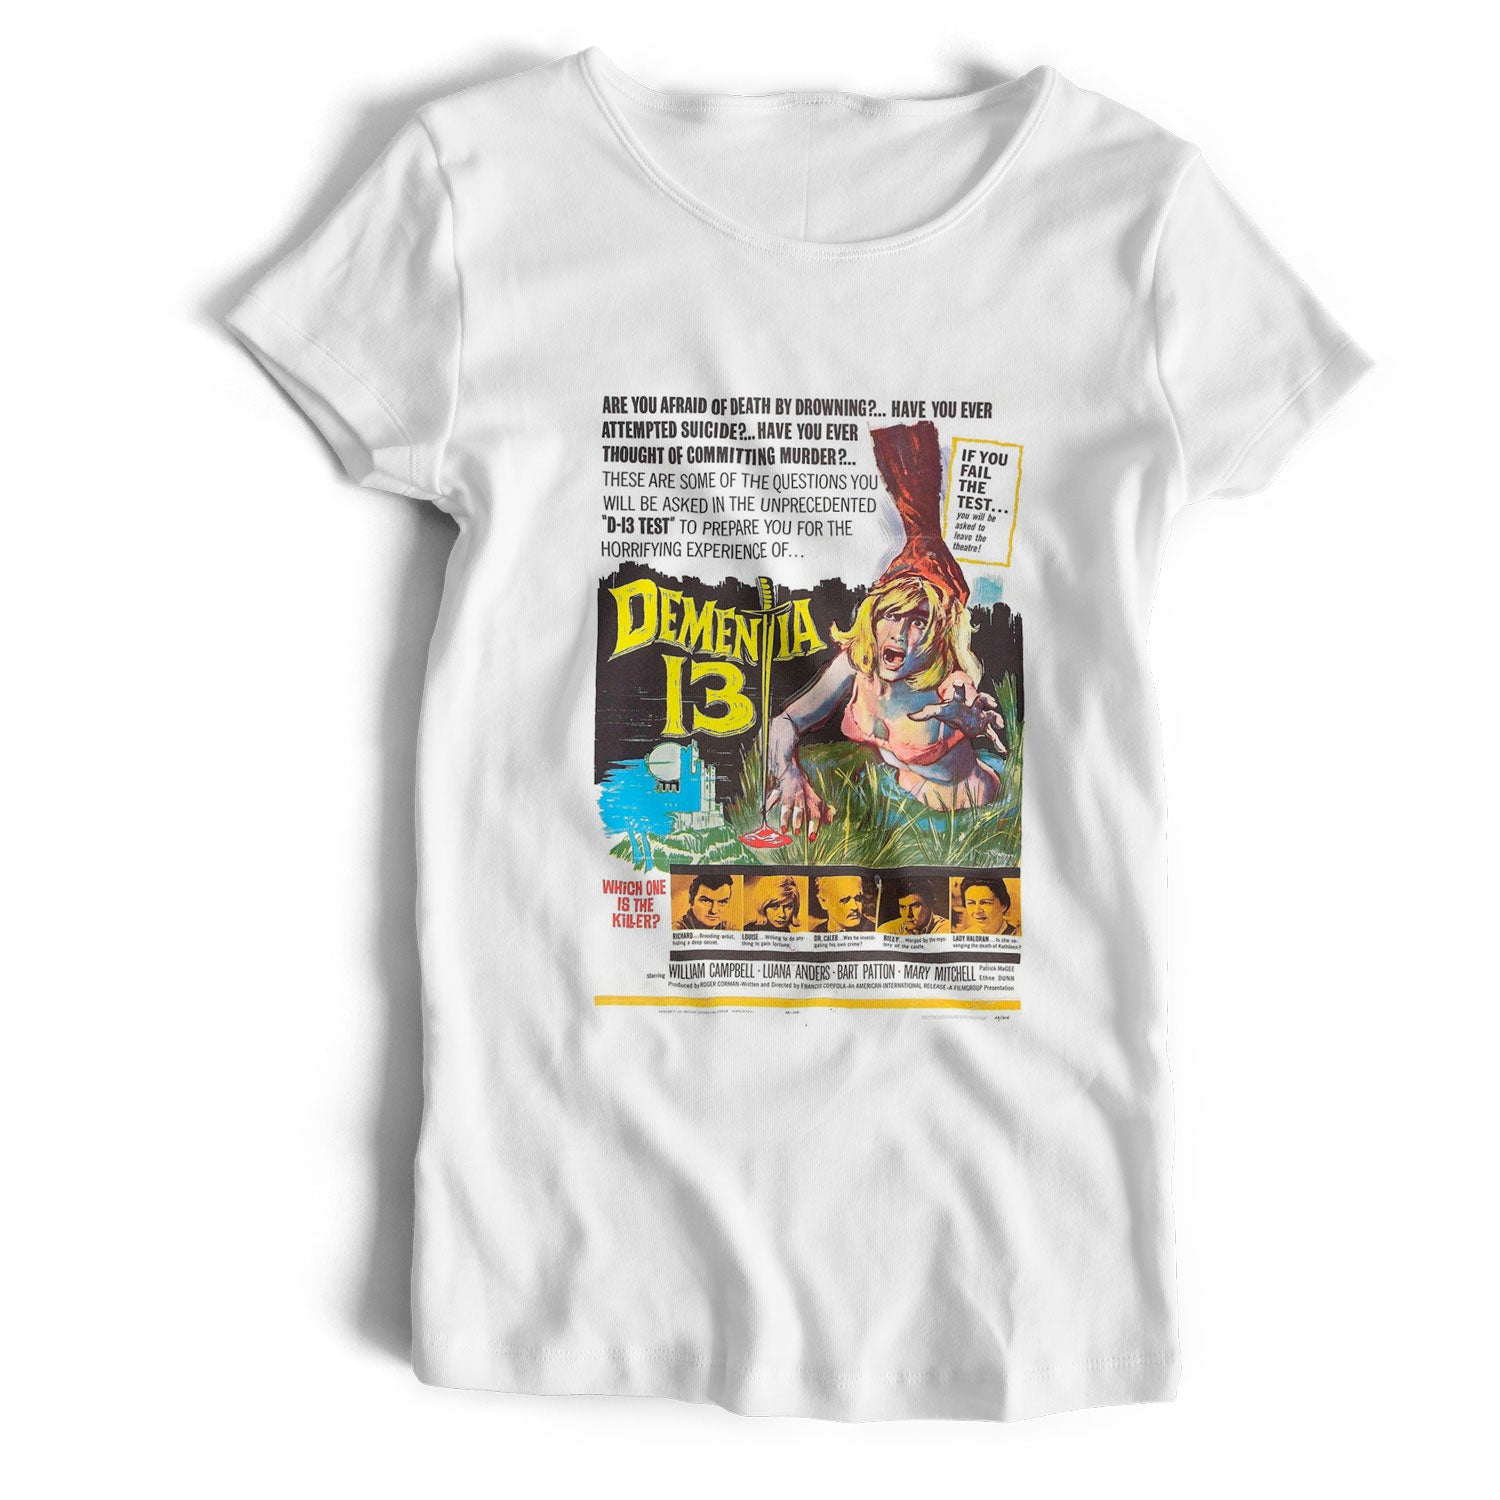 Dementia 13 Poster T Shirt - Old Skool Hooligans Cult Movie Tee